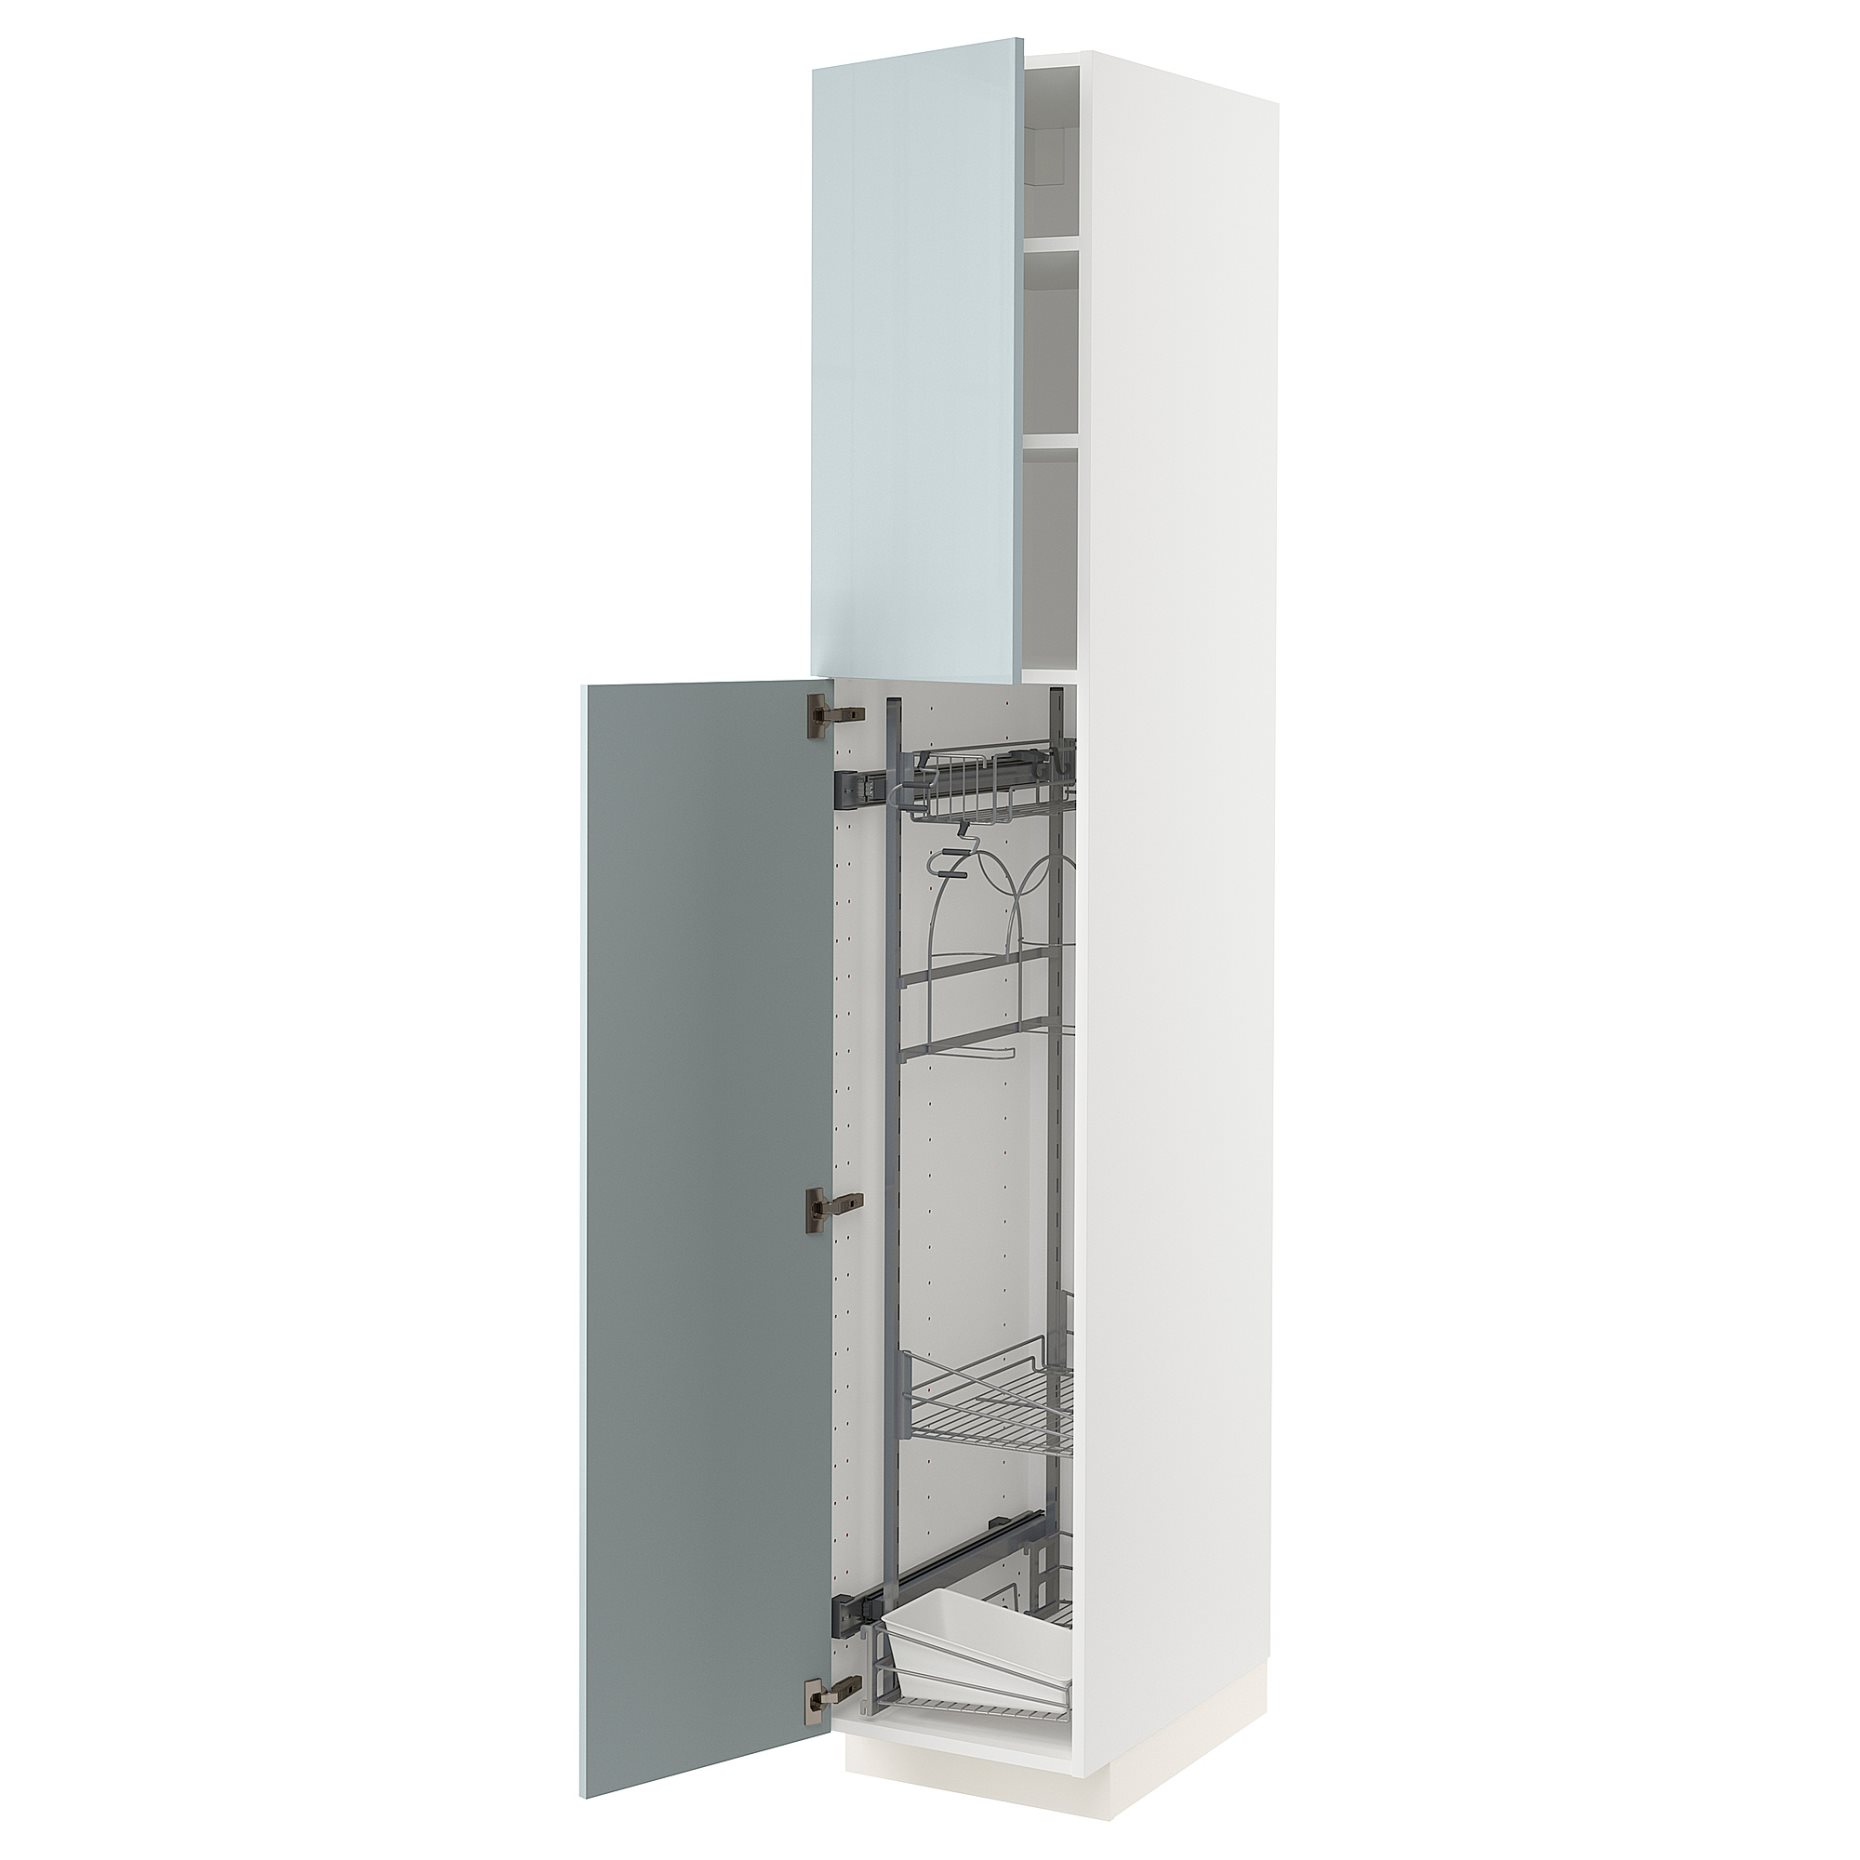 METOD, ψηλό ντουλάπι με εσωτερικά εξάρτηματα για τα είδη καθαρισμού, 40x60x220 cm, 194.794.21